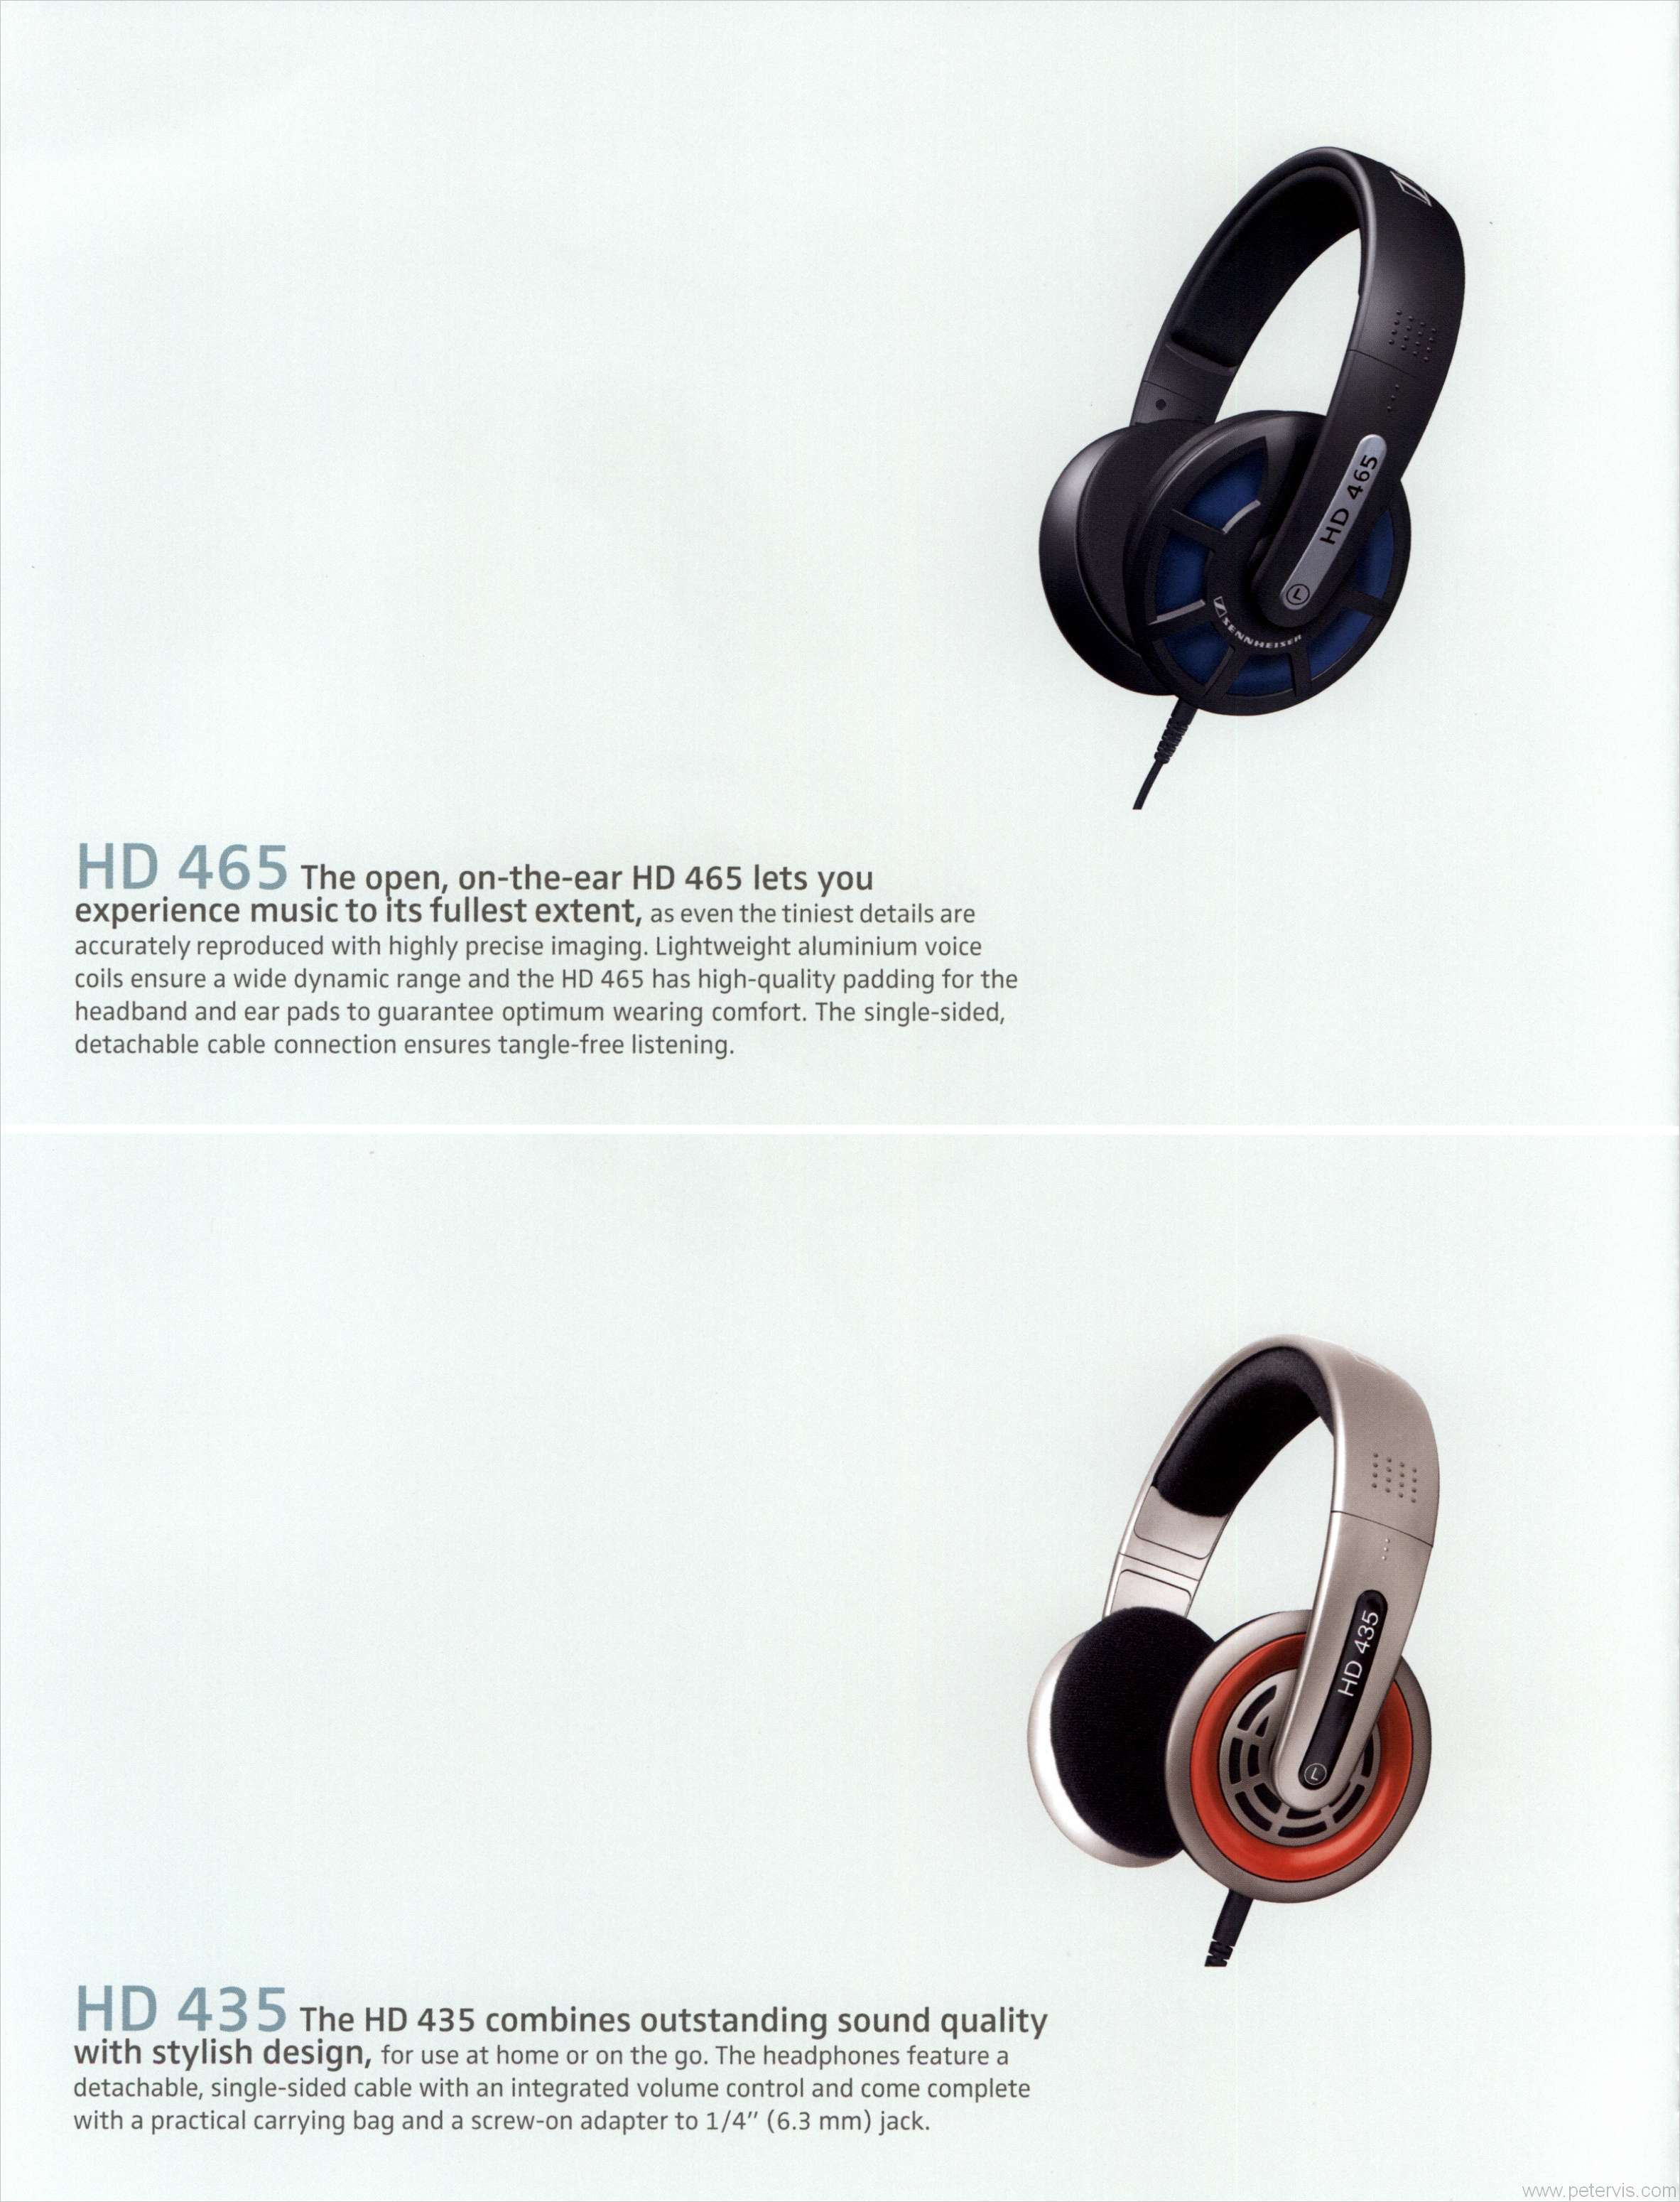 HD 465 AND HD 435